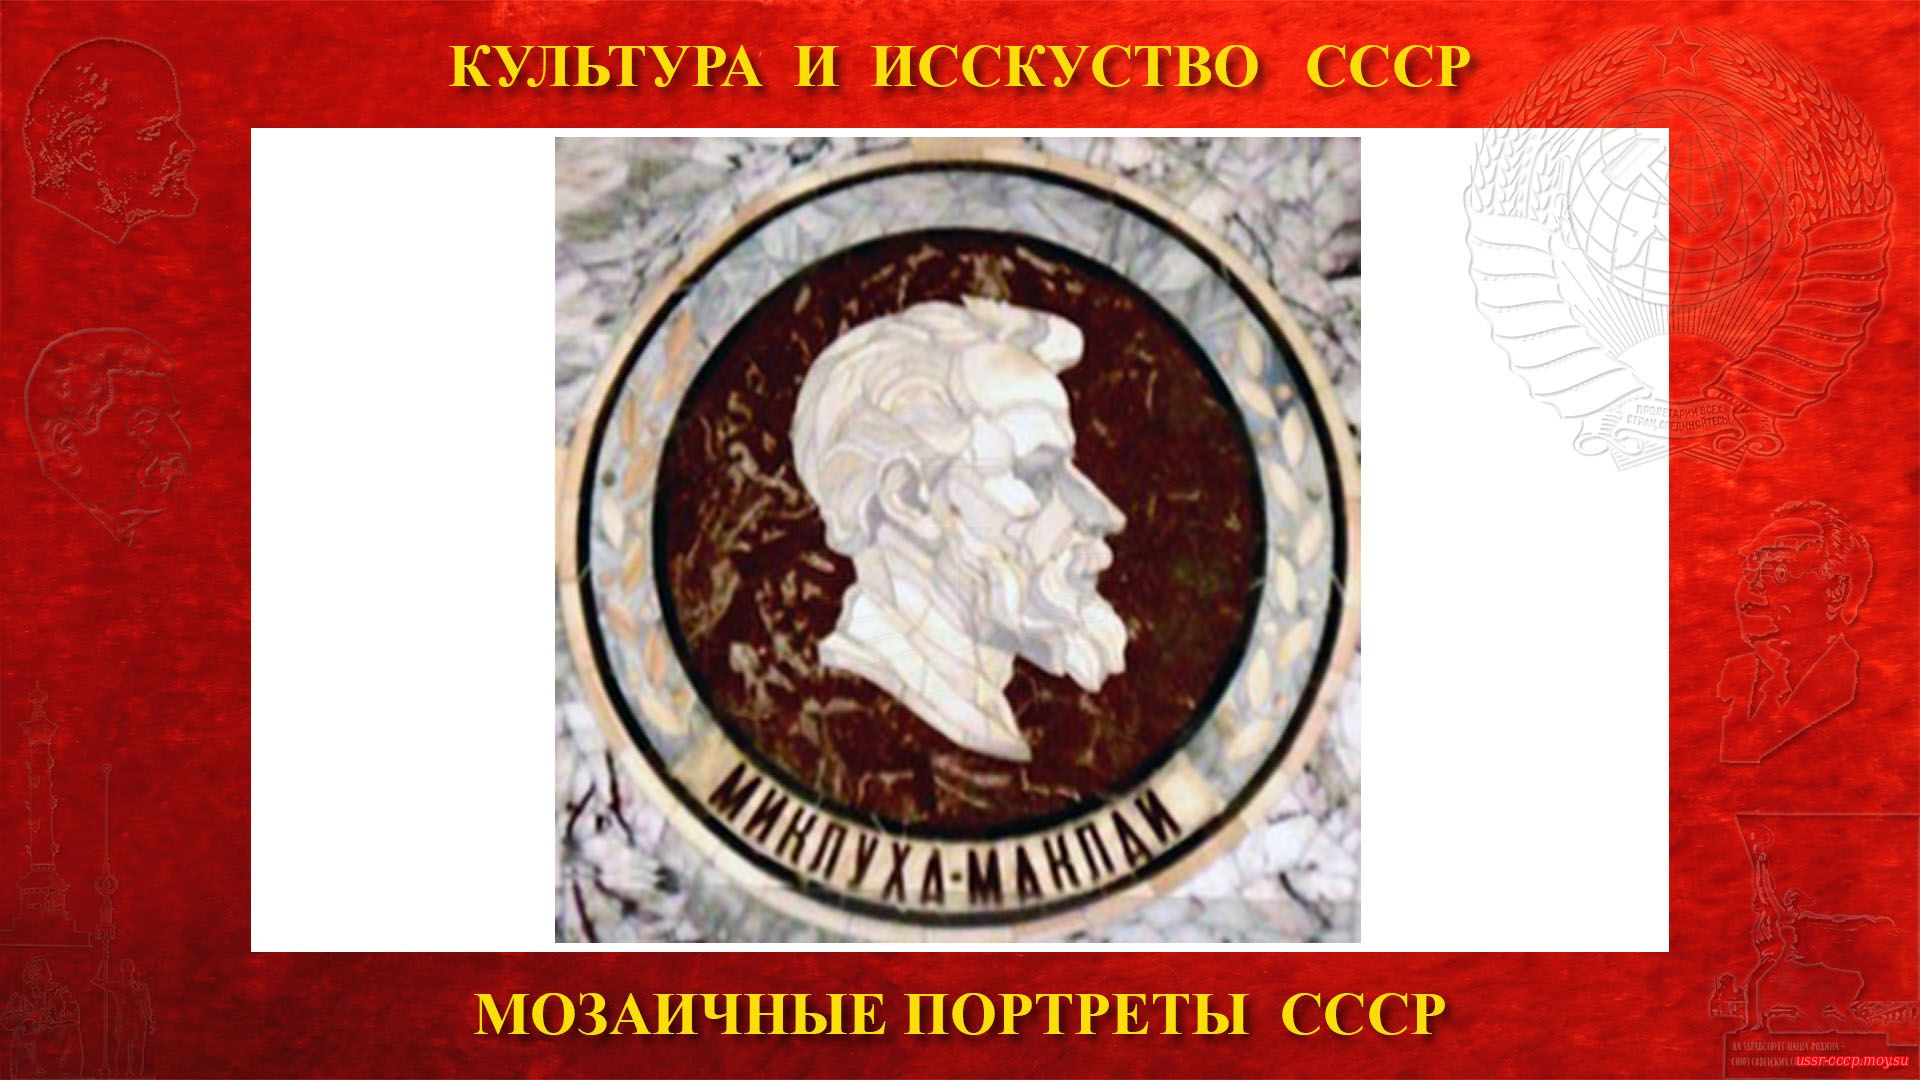 Мозаичный портрет Миклухо-Маклаю Н.Н. на Ленинских горах в ГЗ МГУ (Москва 1953)